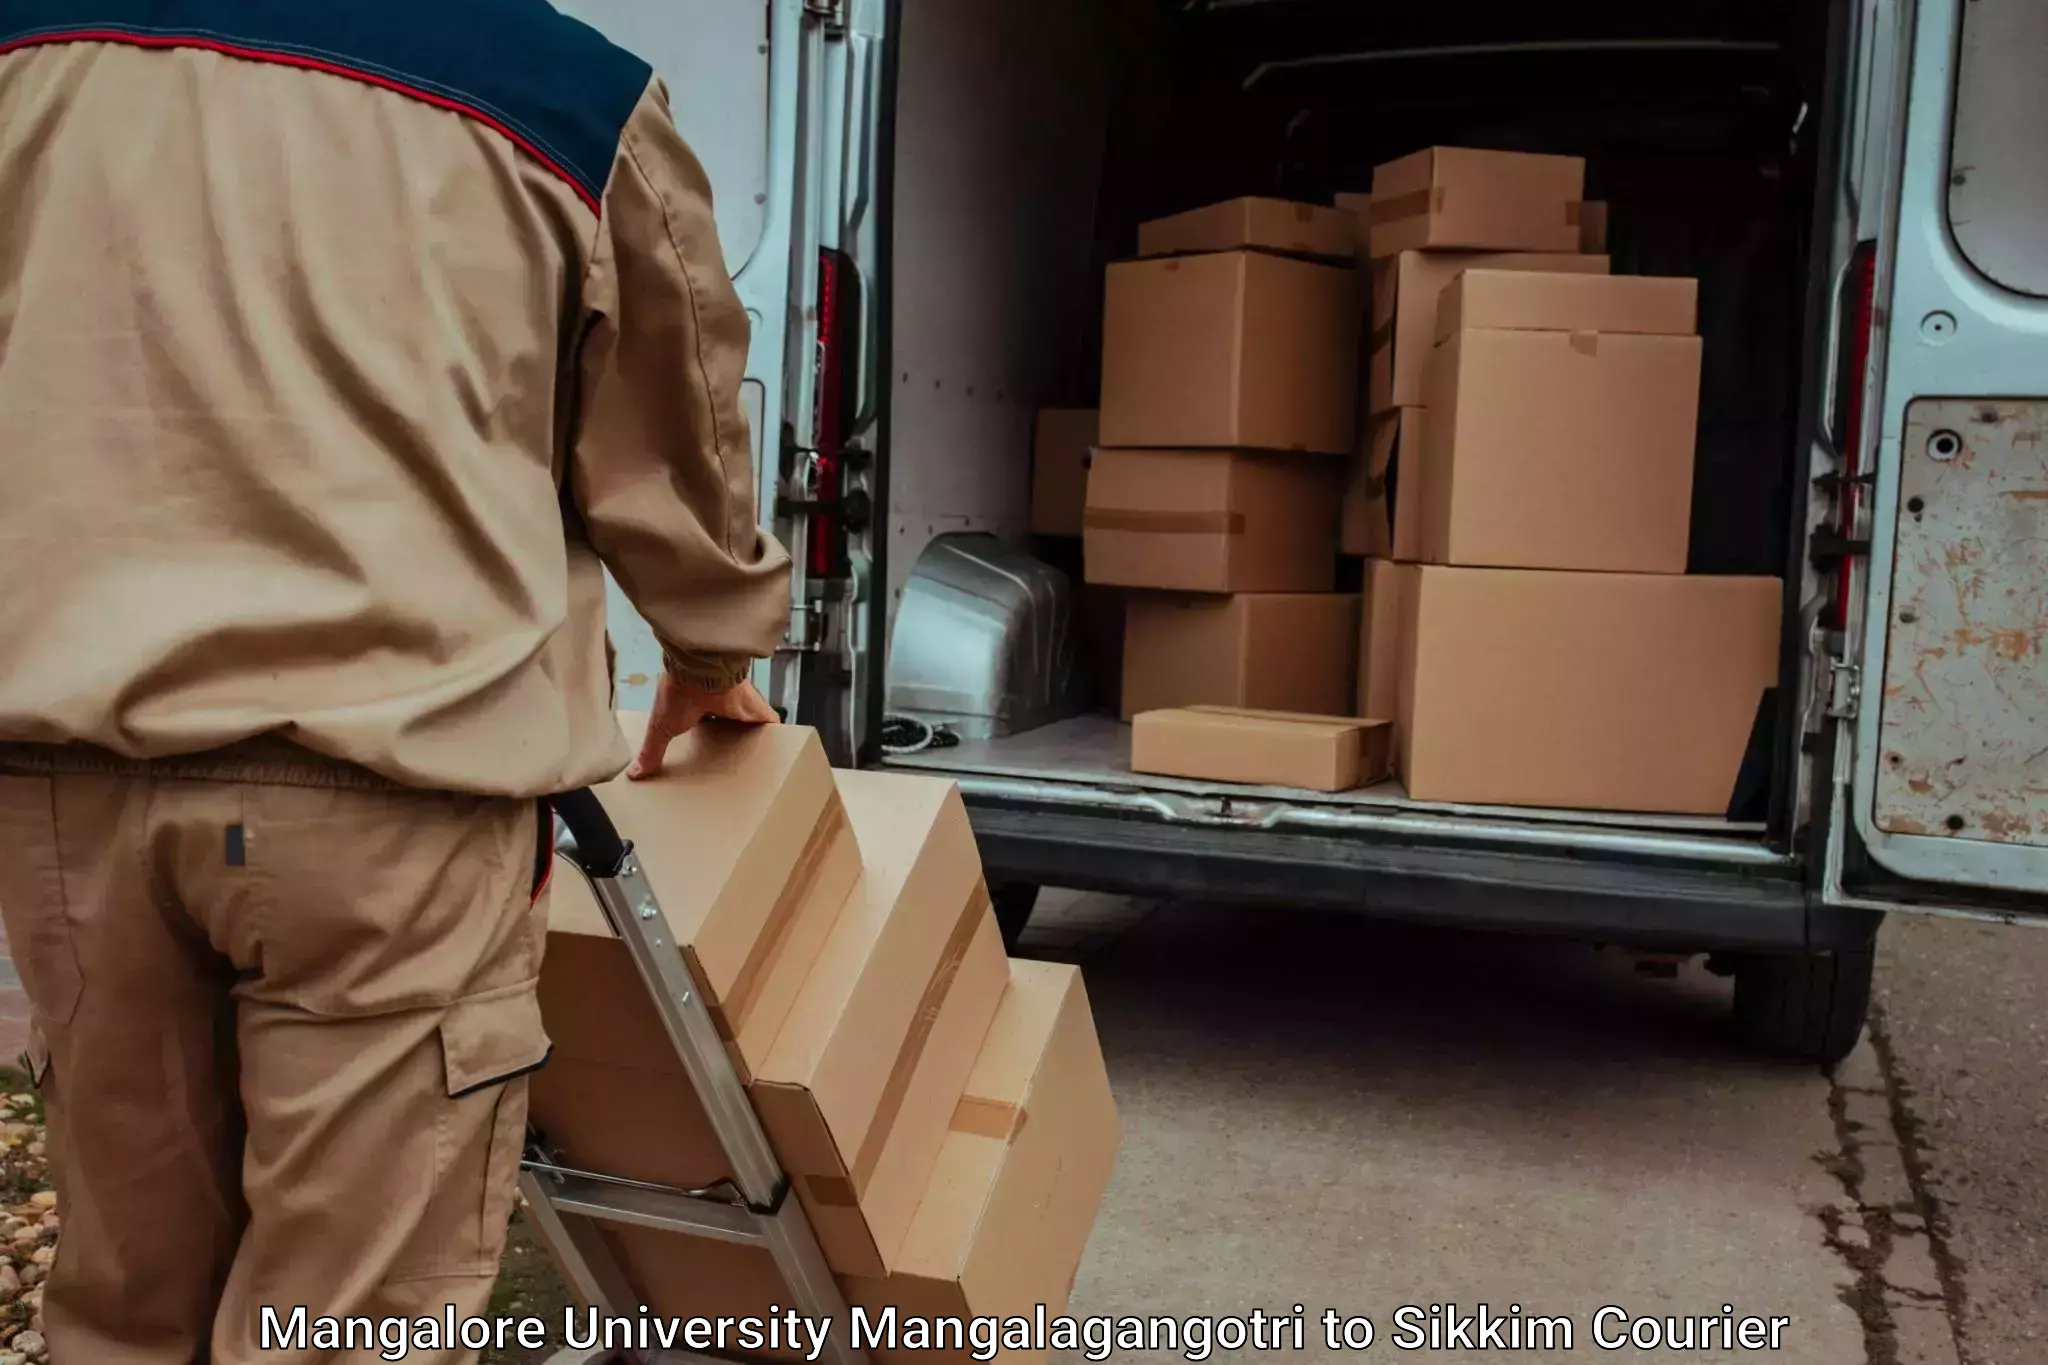 Luggage transport operations Mangalore University Mangalagangotri to Sikkim